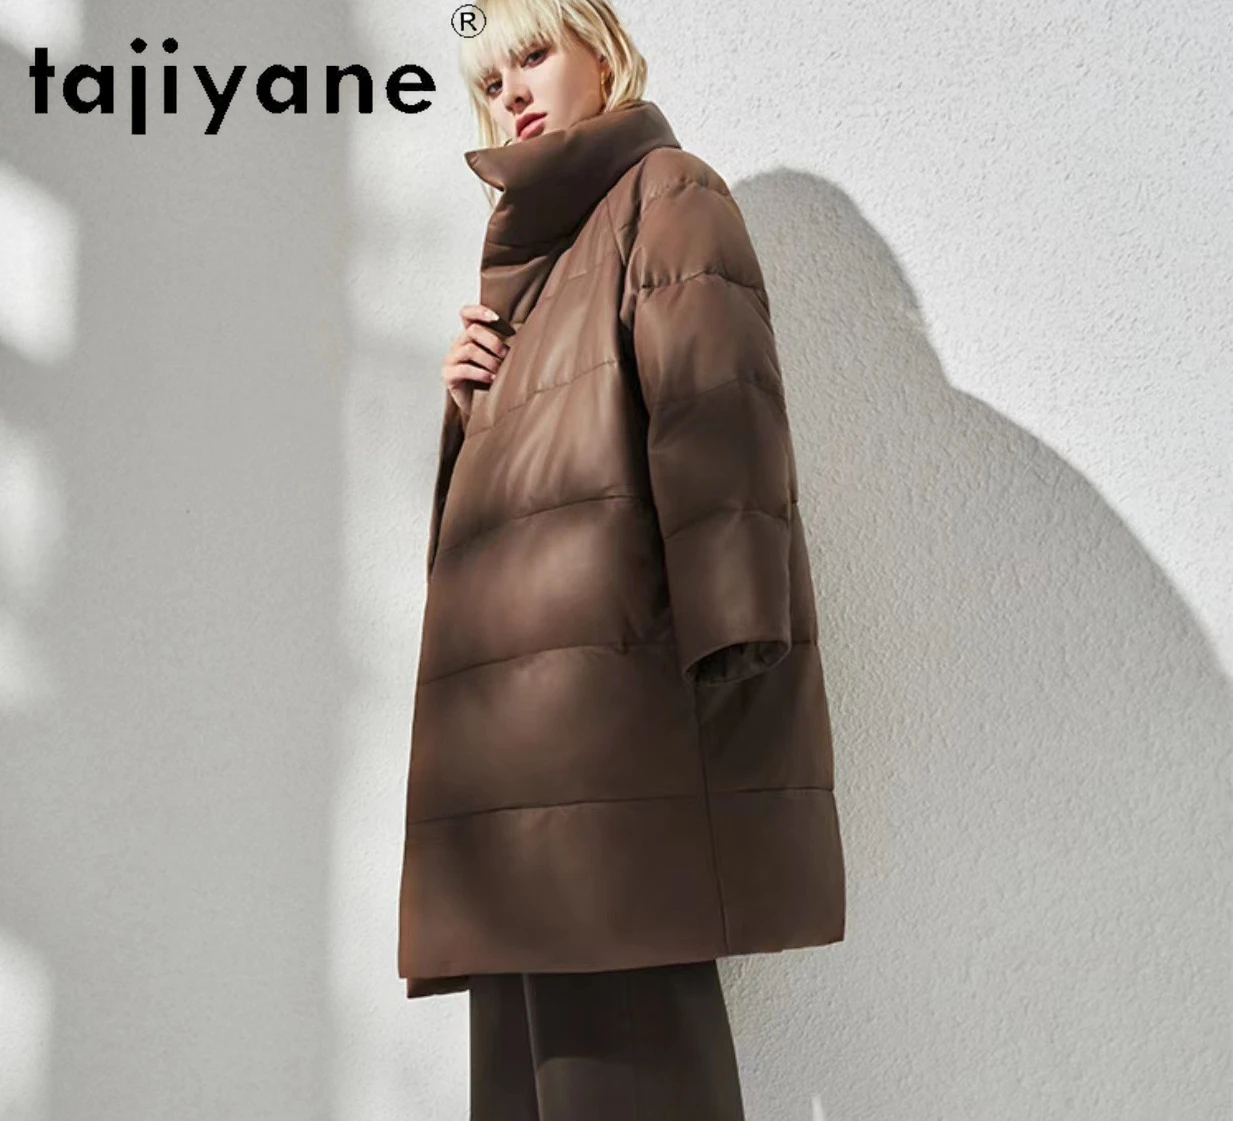 Tajiyane-Doudoune en cuir de mouton véritable pour femme, col montant en duvet d'oie blanc, parkas chaudes mi-longues, mode d'hiver